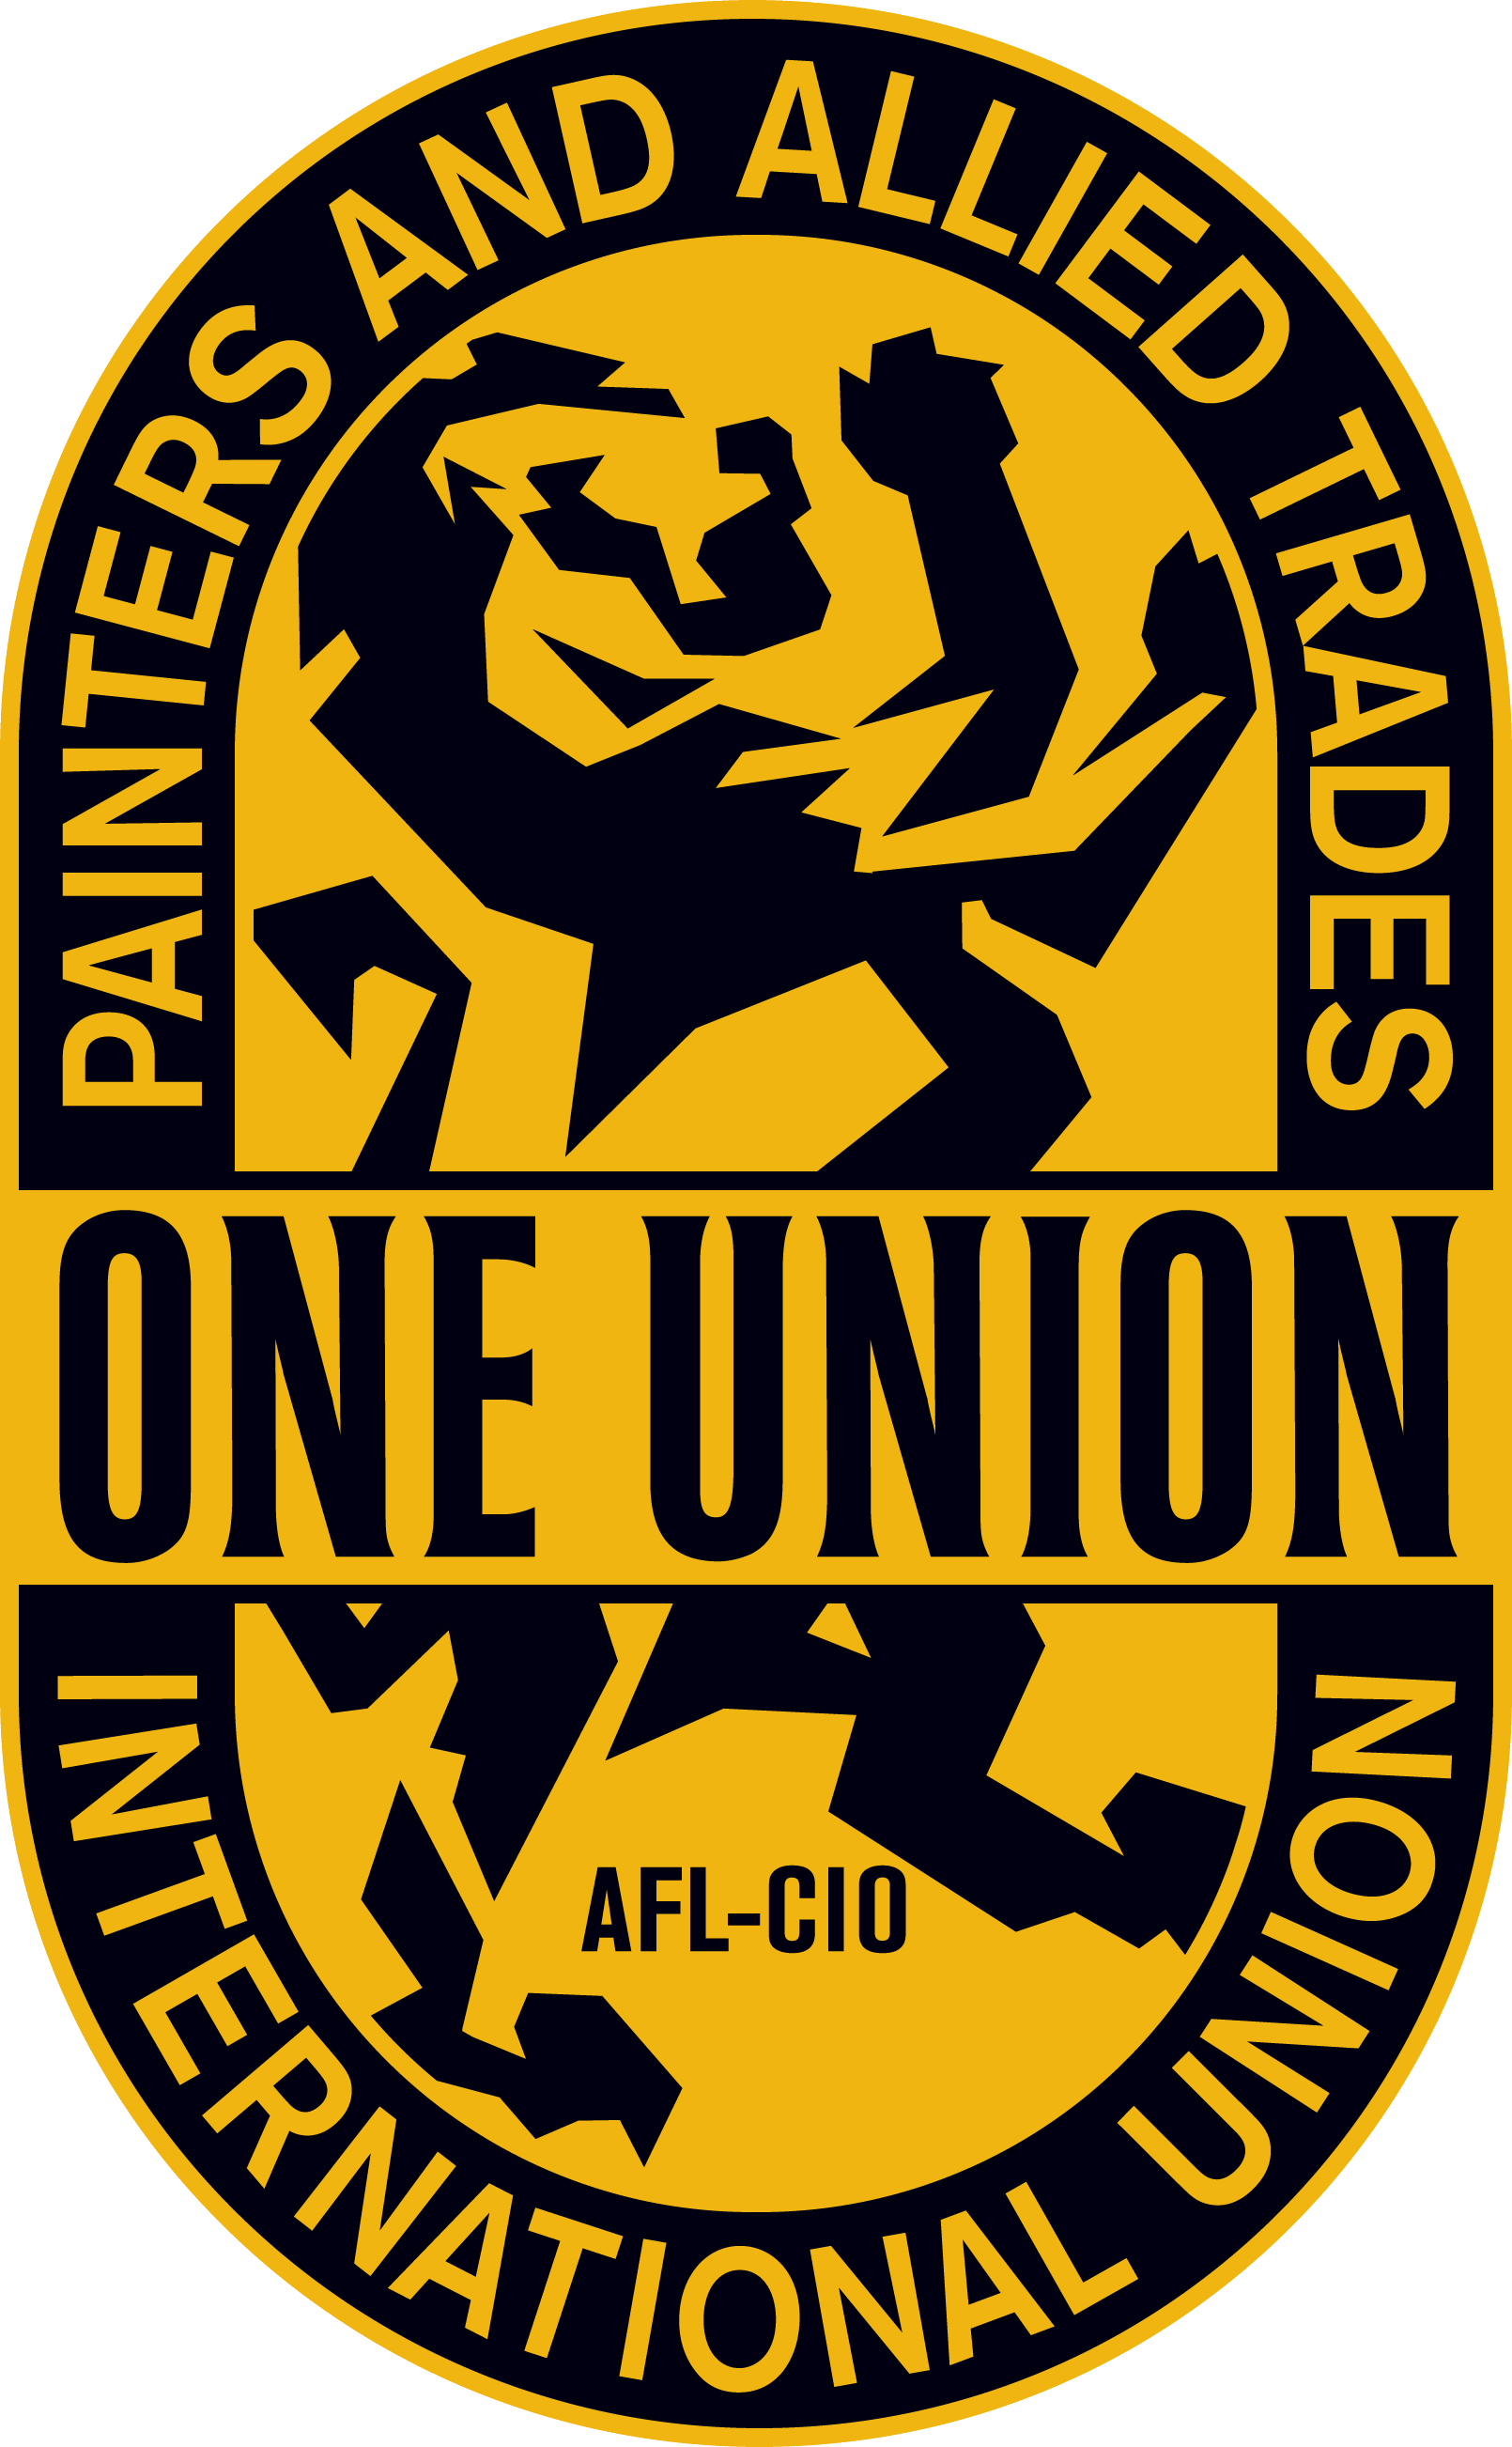 Painters Union